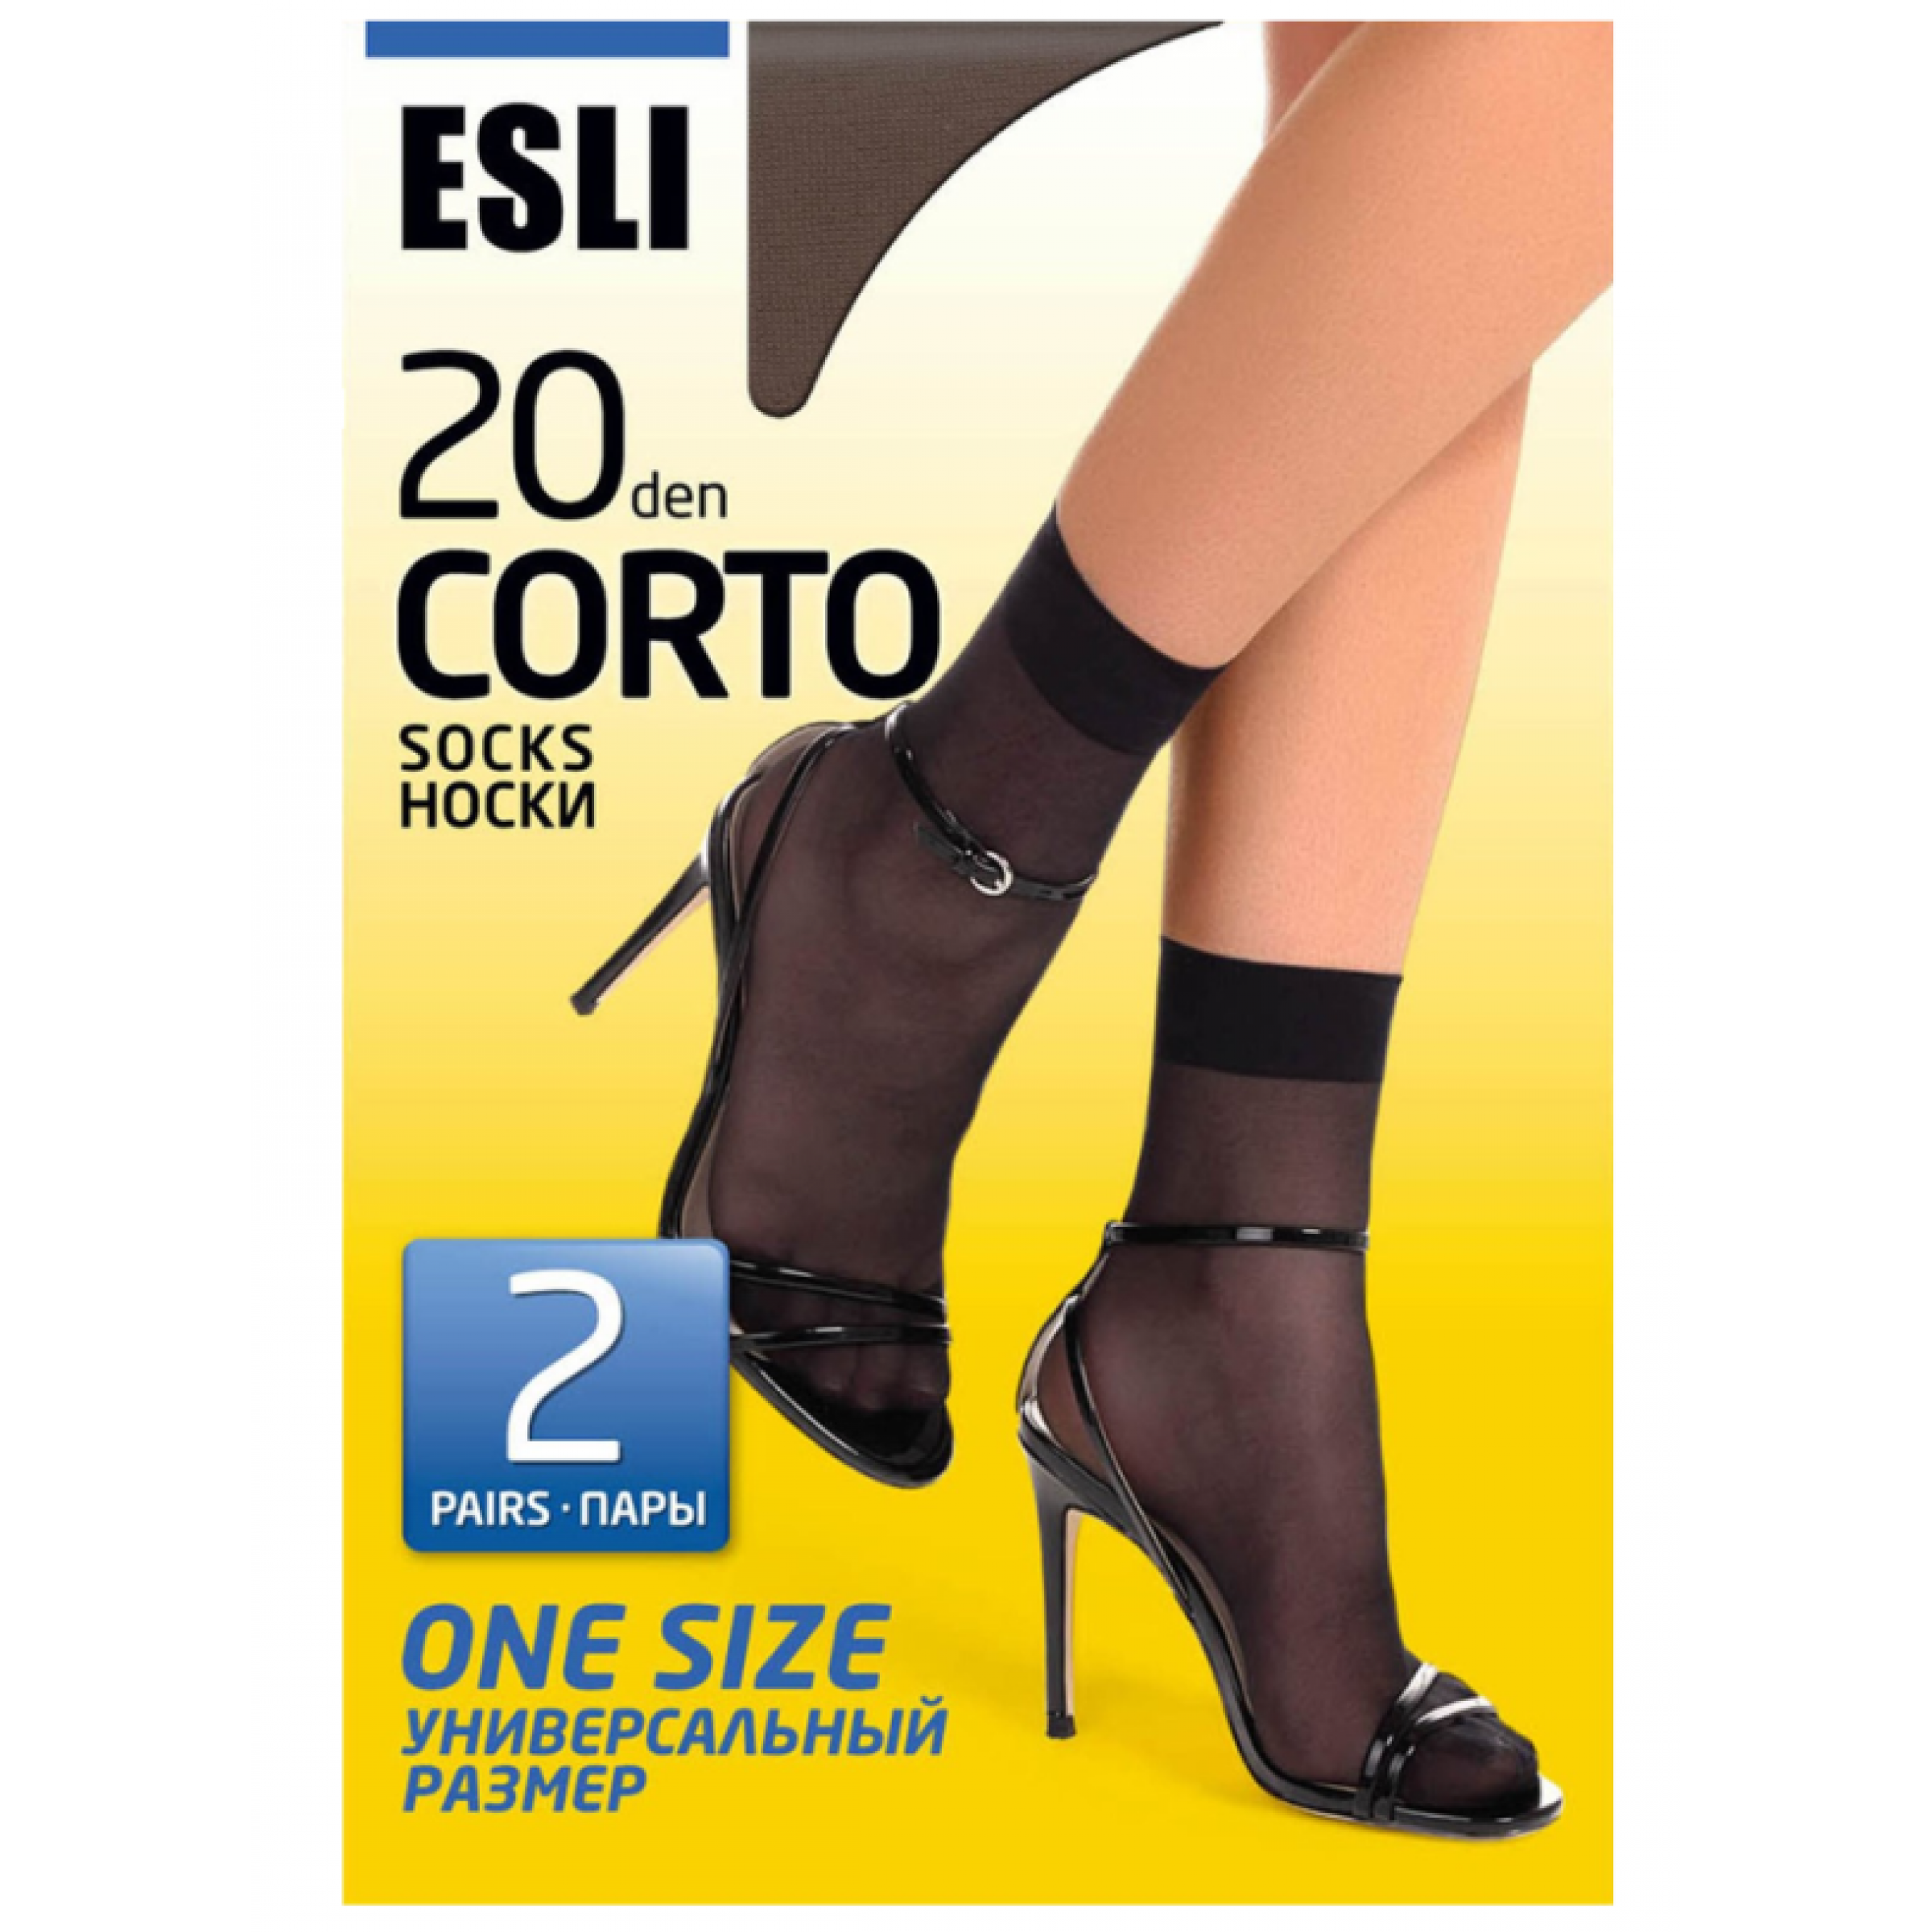 Женские носки Conte Esli Corto 37-40 размер nero цвет 20 den 2 пары